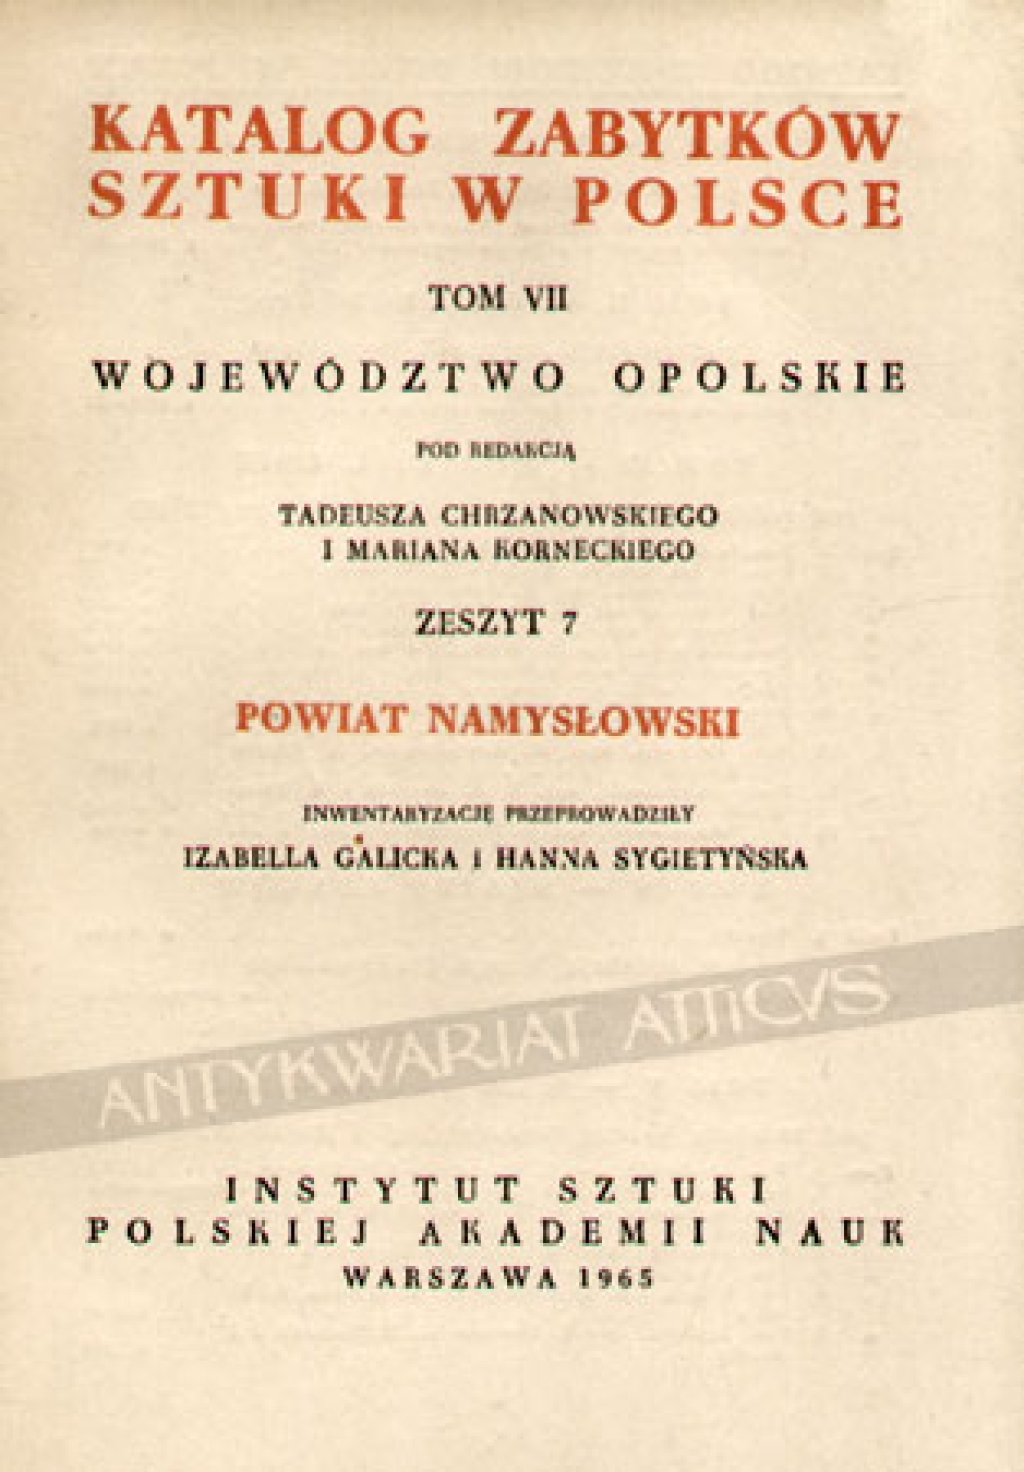 Katalog zabytków sztuki w Polsce, t. VII - województwo opolskie, zesz. 7, powiat namysłowski